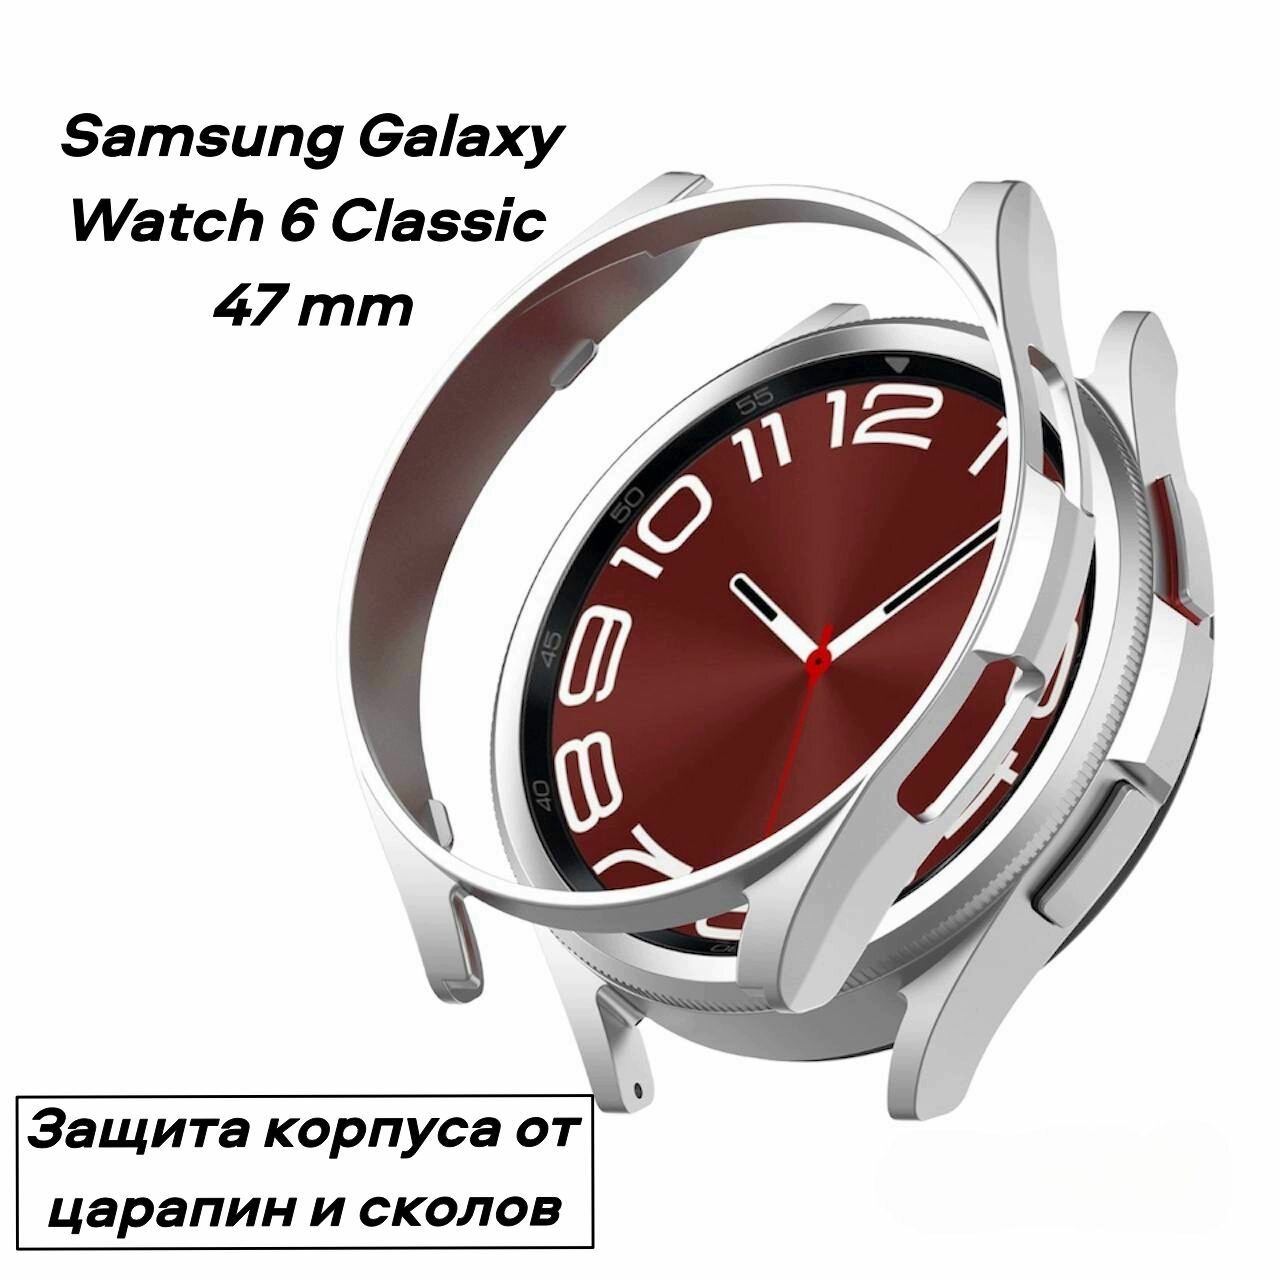 Защитный чехол-бампер S&T Frame рамка для часов Samsung Galaxy Watch 6 Classic 47 mm защищает корпус от сколов и царапин из мягкого термопластика